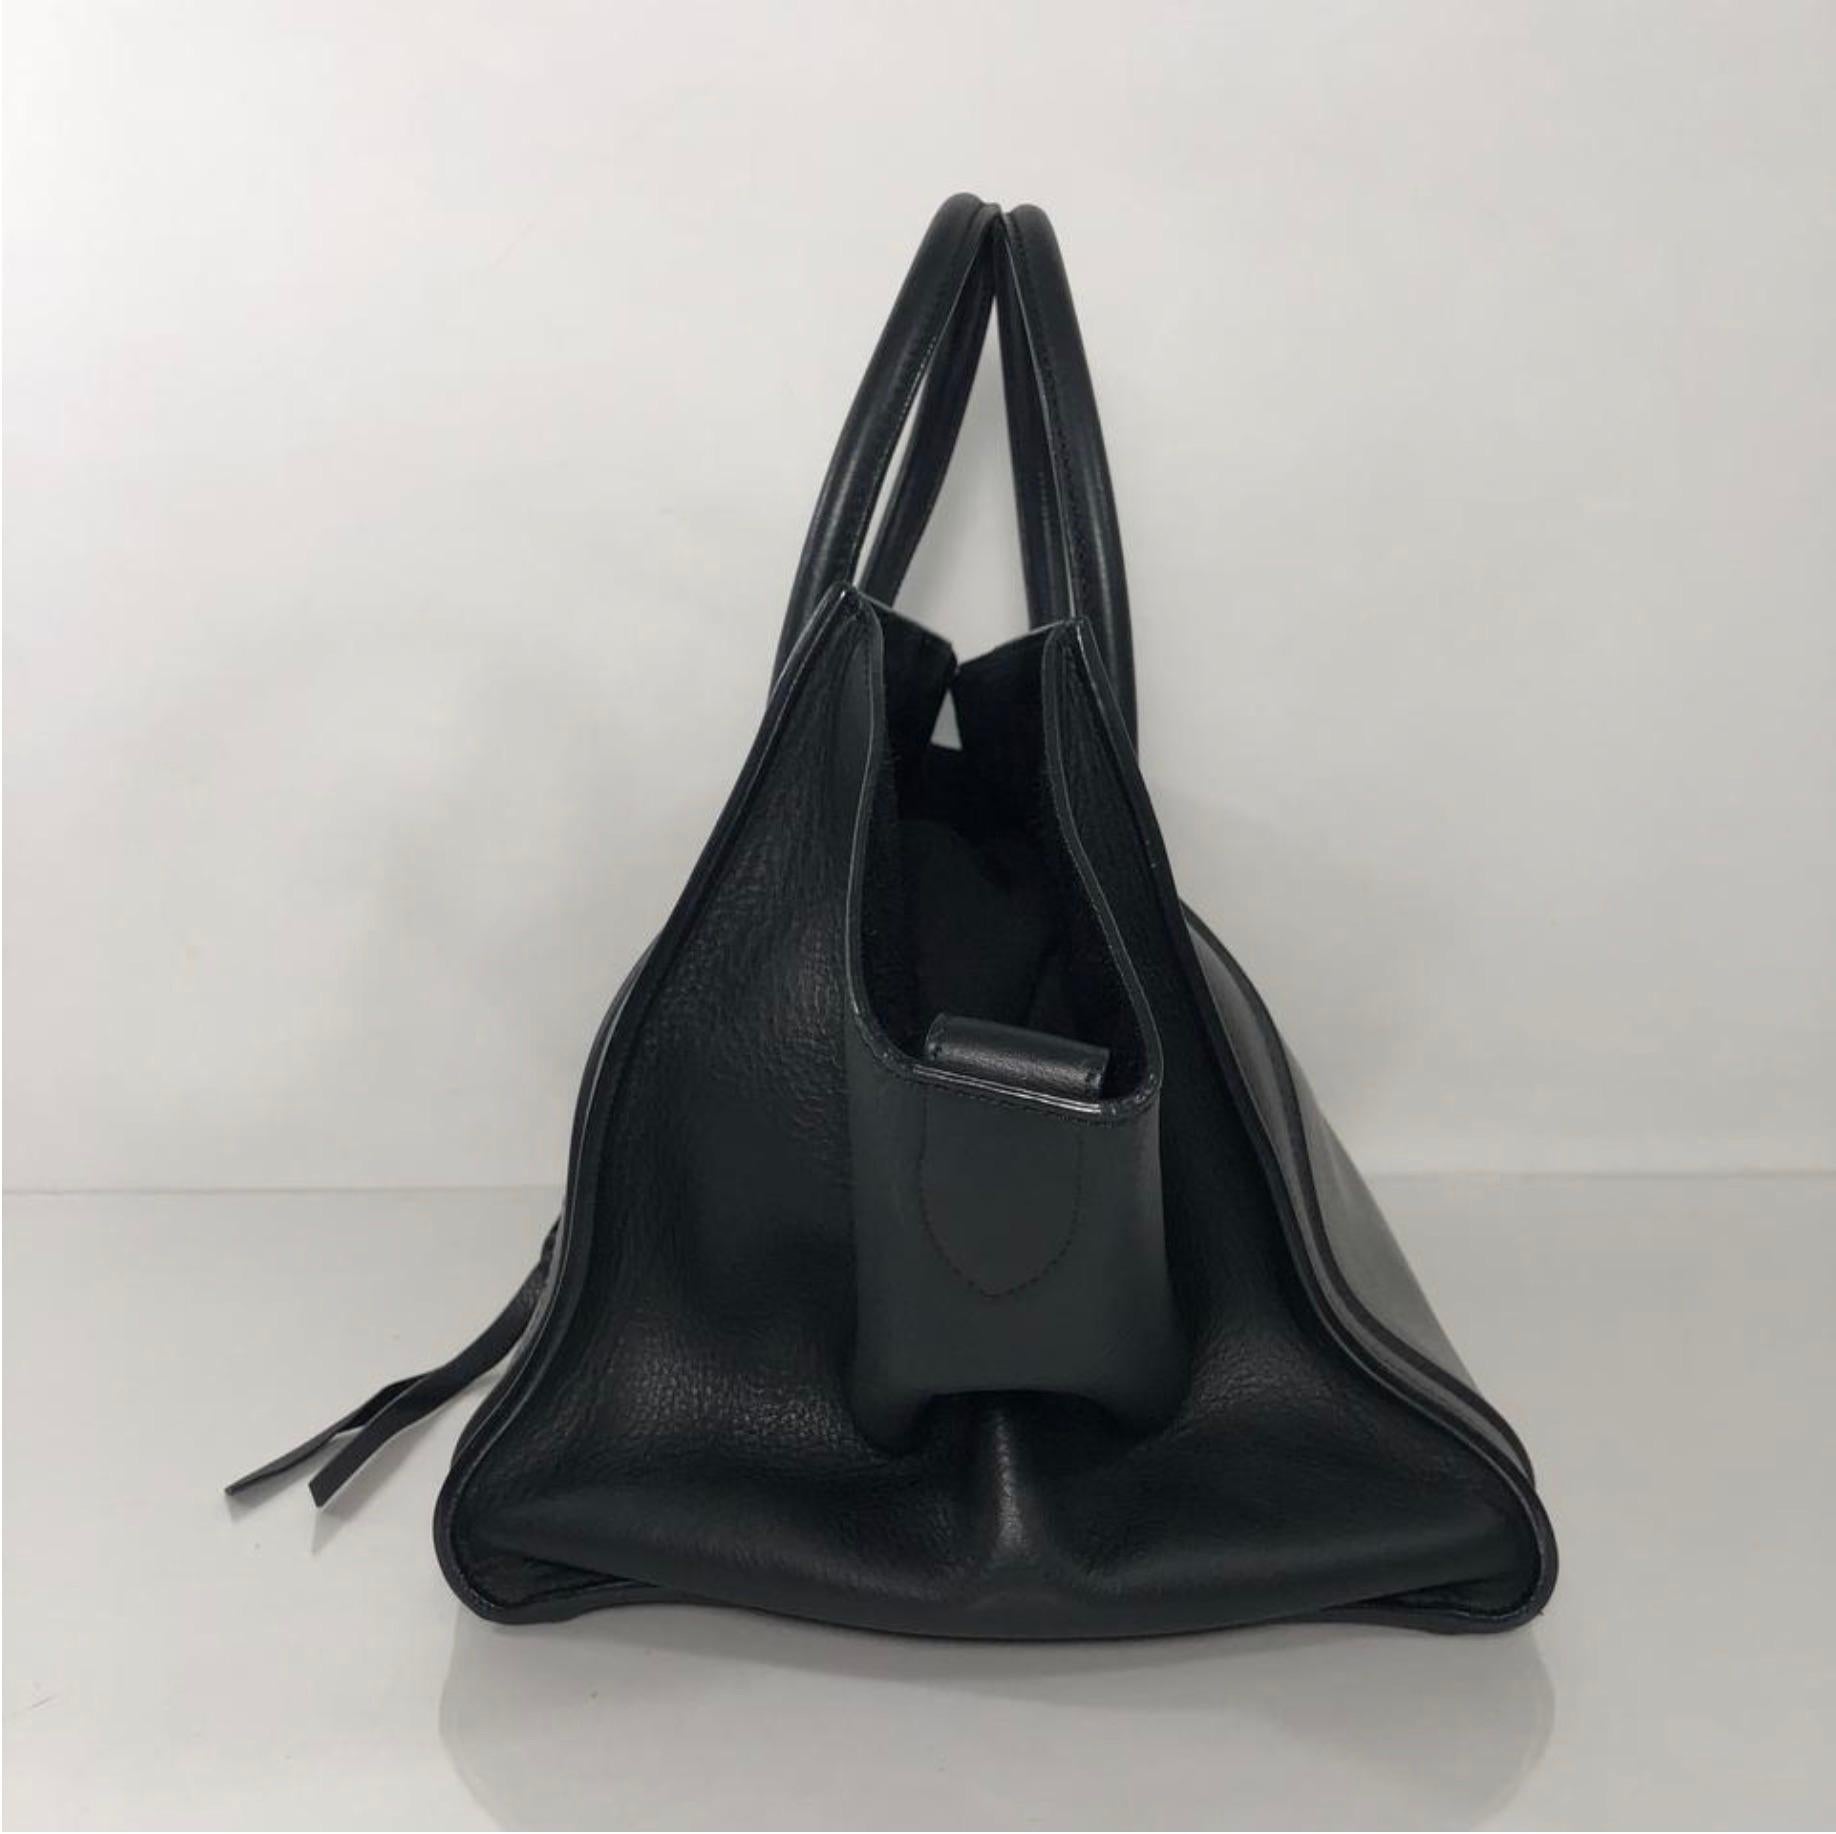 Celine Leather Phantom Medium Black Satchel Tote Handbag 2